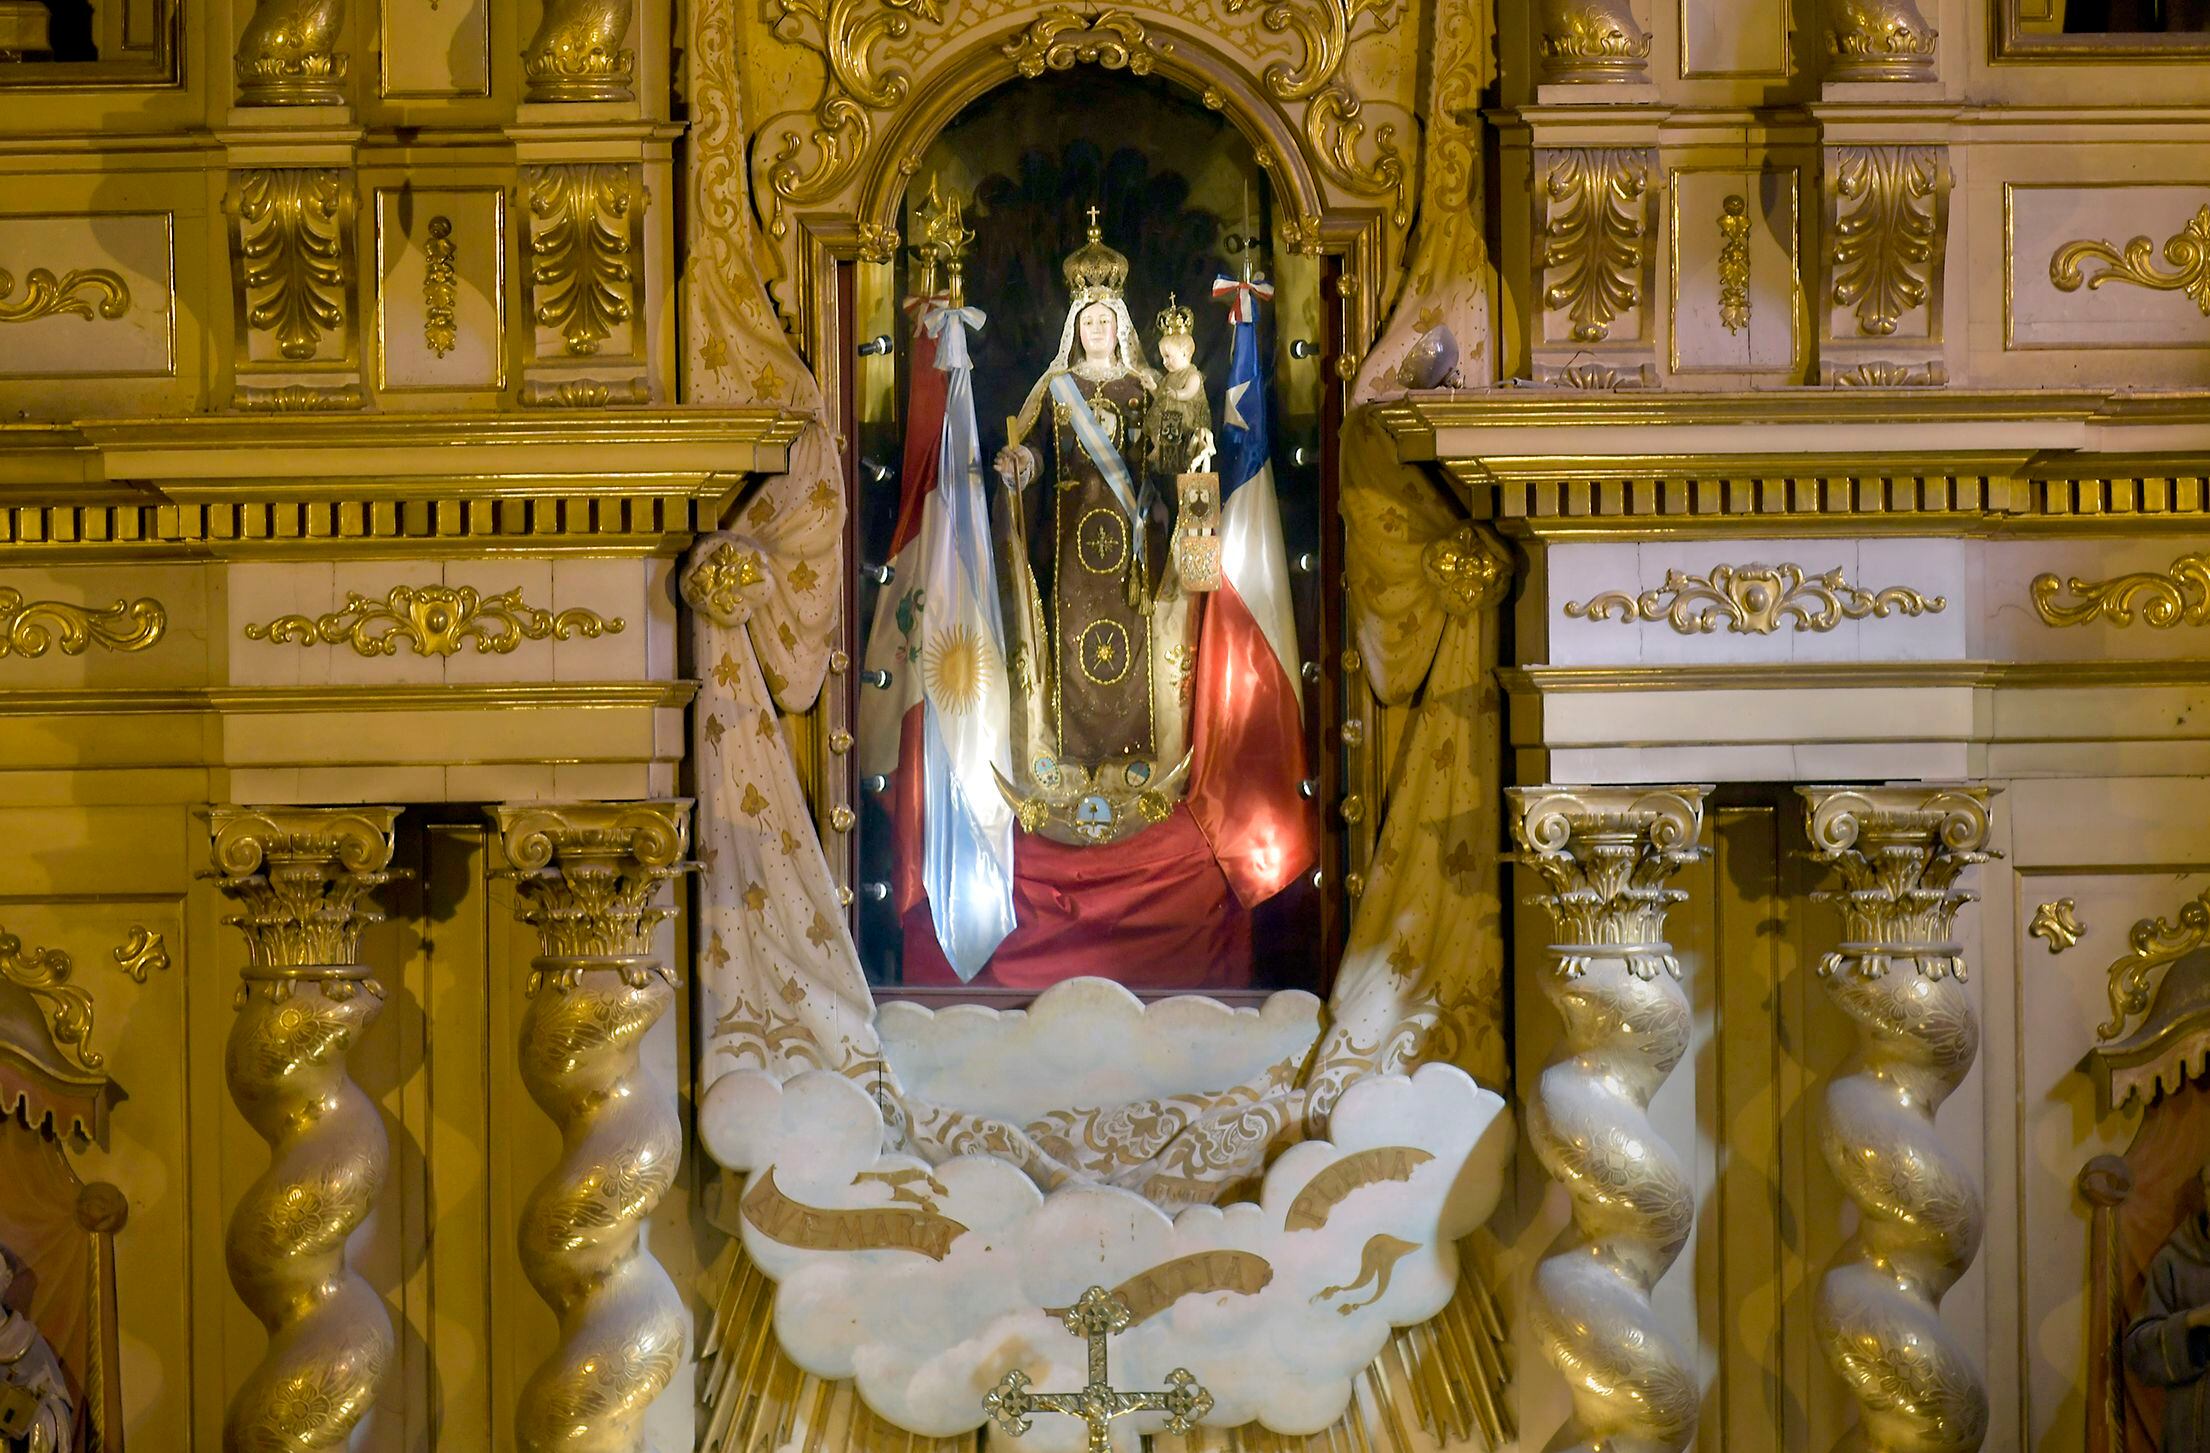  Virgen del Carmen de Cuyo, Patrona y Generala del Ejército de los Andes, y el bastón de mando del General José de San Martín. Foto: Orlando Pelichotti